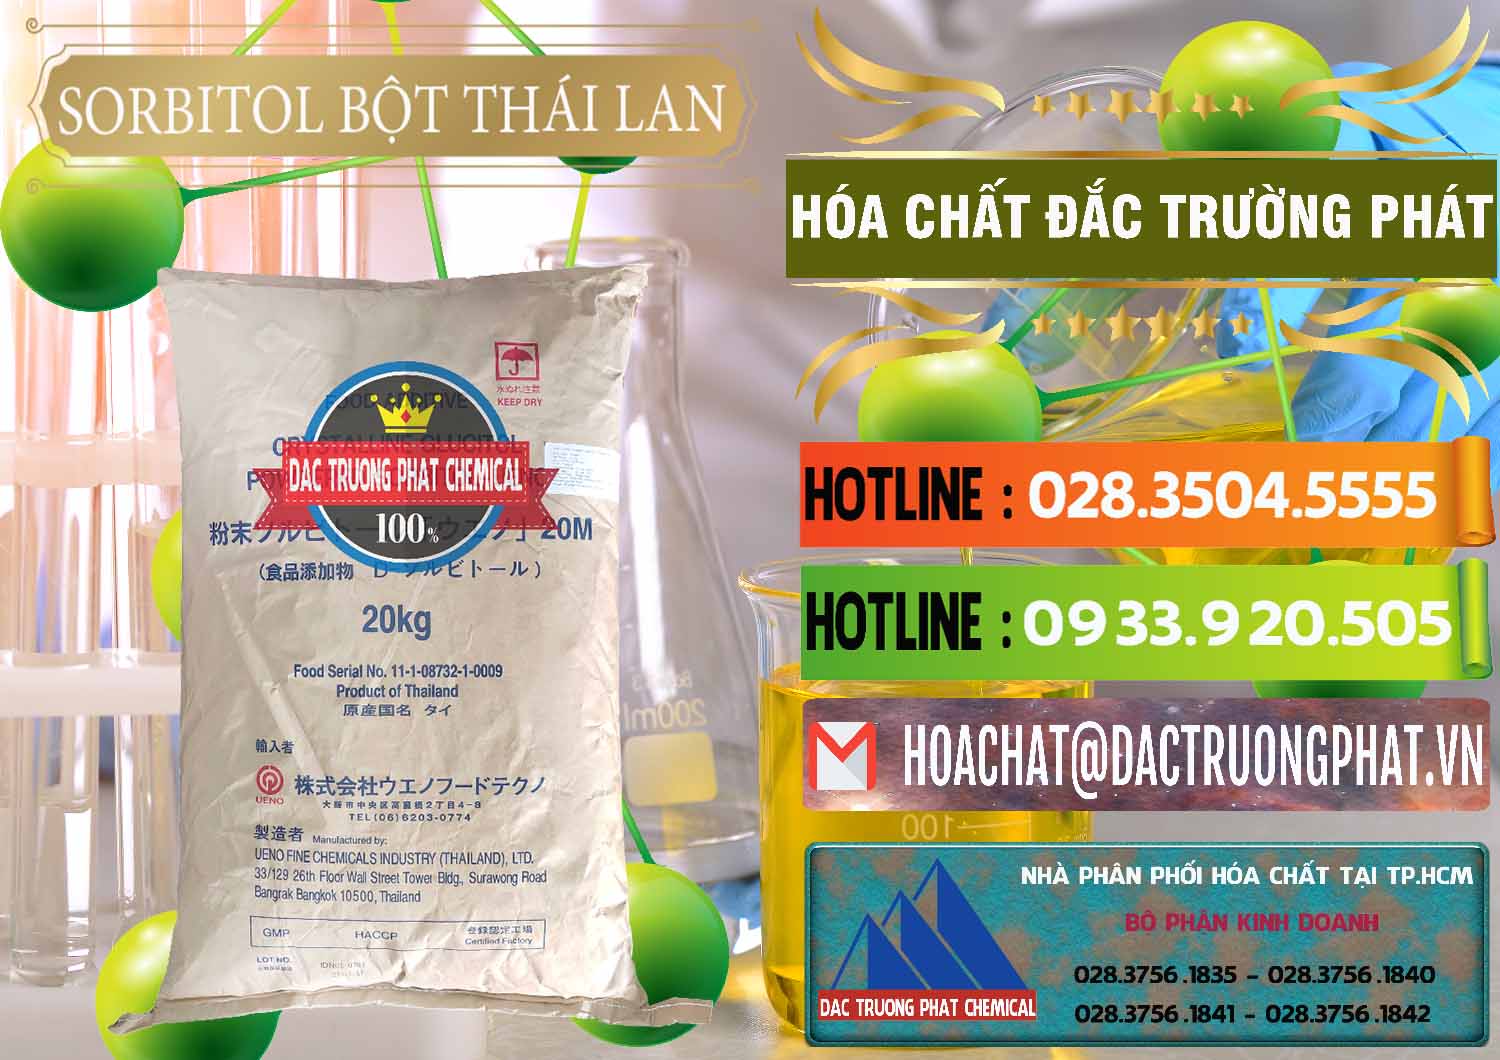 Cty chuyên nhập khẩu và bán D-Sorbitol Bột - C6H14O6 Food Grade Thái Lan Thailand - 0322 - Cty chuyên kinh doanh - phân phối hóa chất tại TP.HCM - cungcaphoachat.com.vn